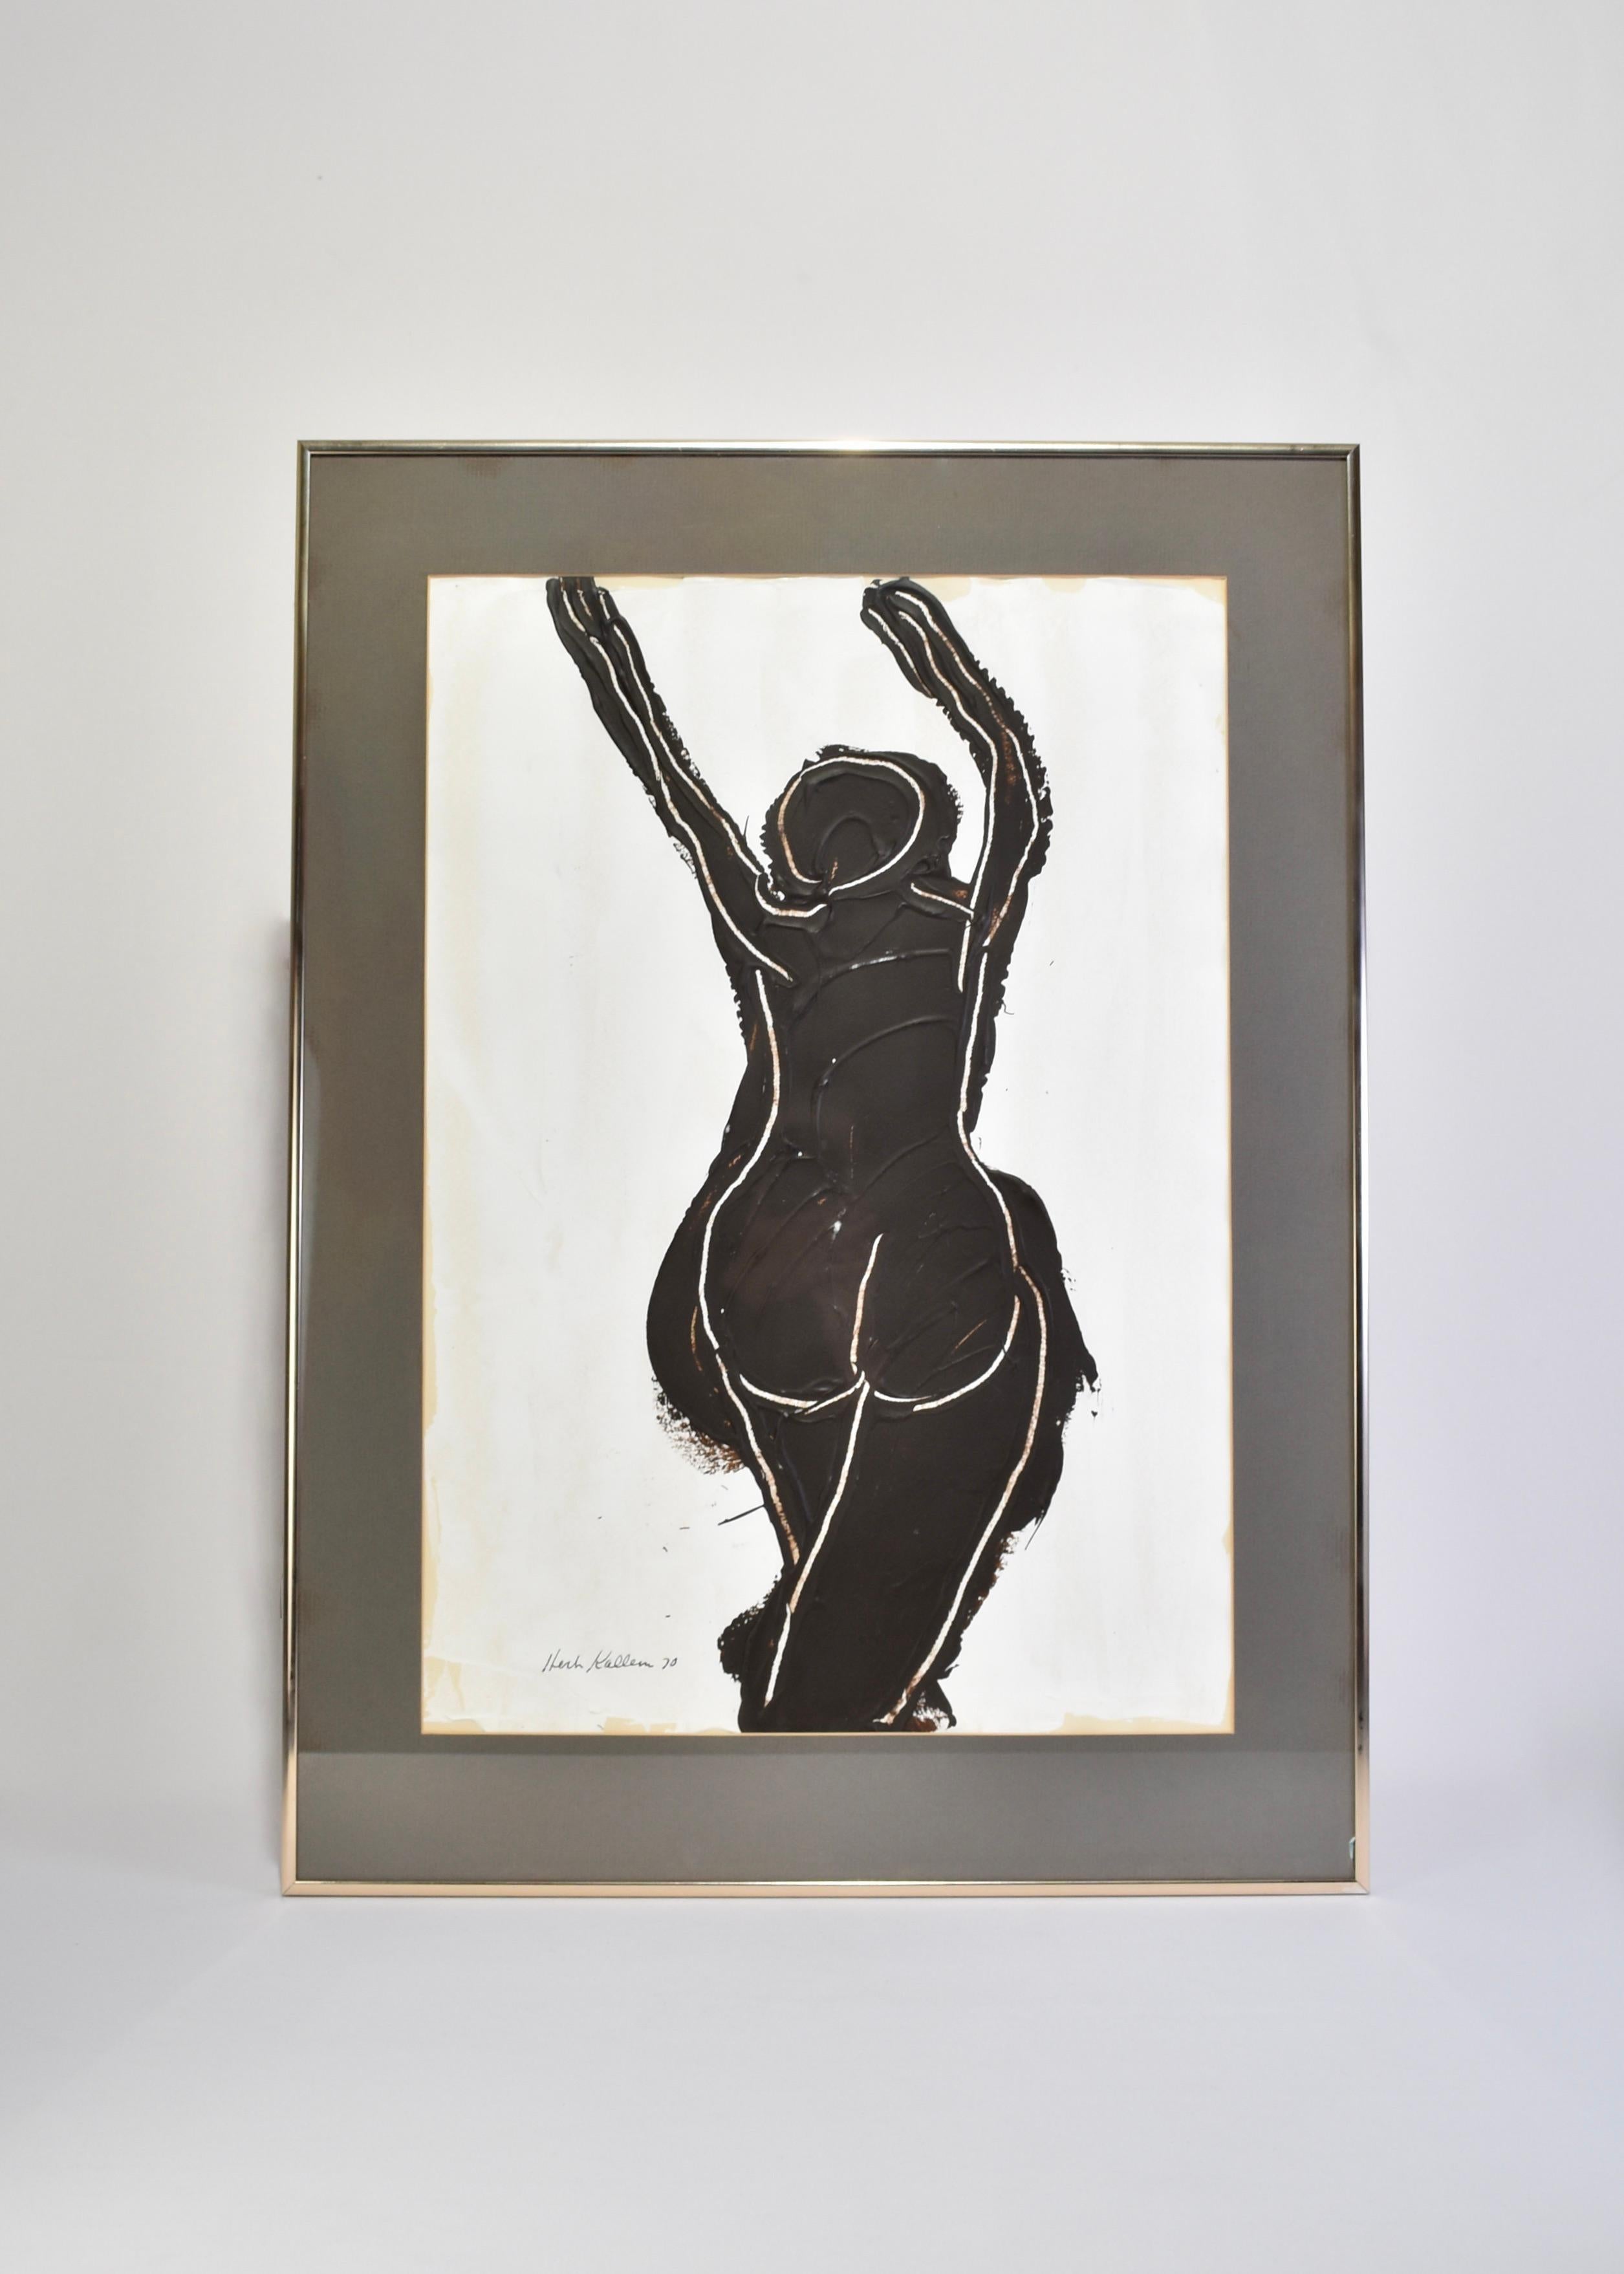 Peinture vintage encadrée d'une figure nue par l'artiste renommé Herbert Kallem (1909 - 1994). Signé Herbert Kallem, 70'.

Encadré en aluminium d'origine avec un mat gris et un fil de fer au dos pour le suspendre. L'autocollant original de